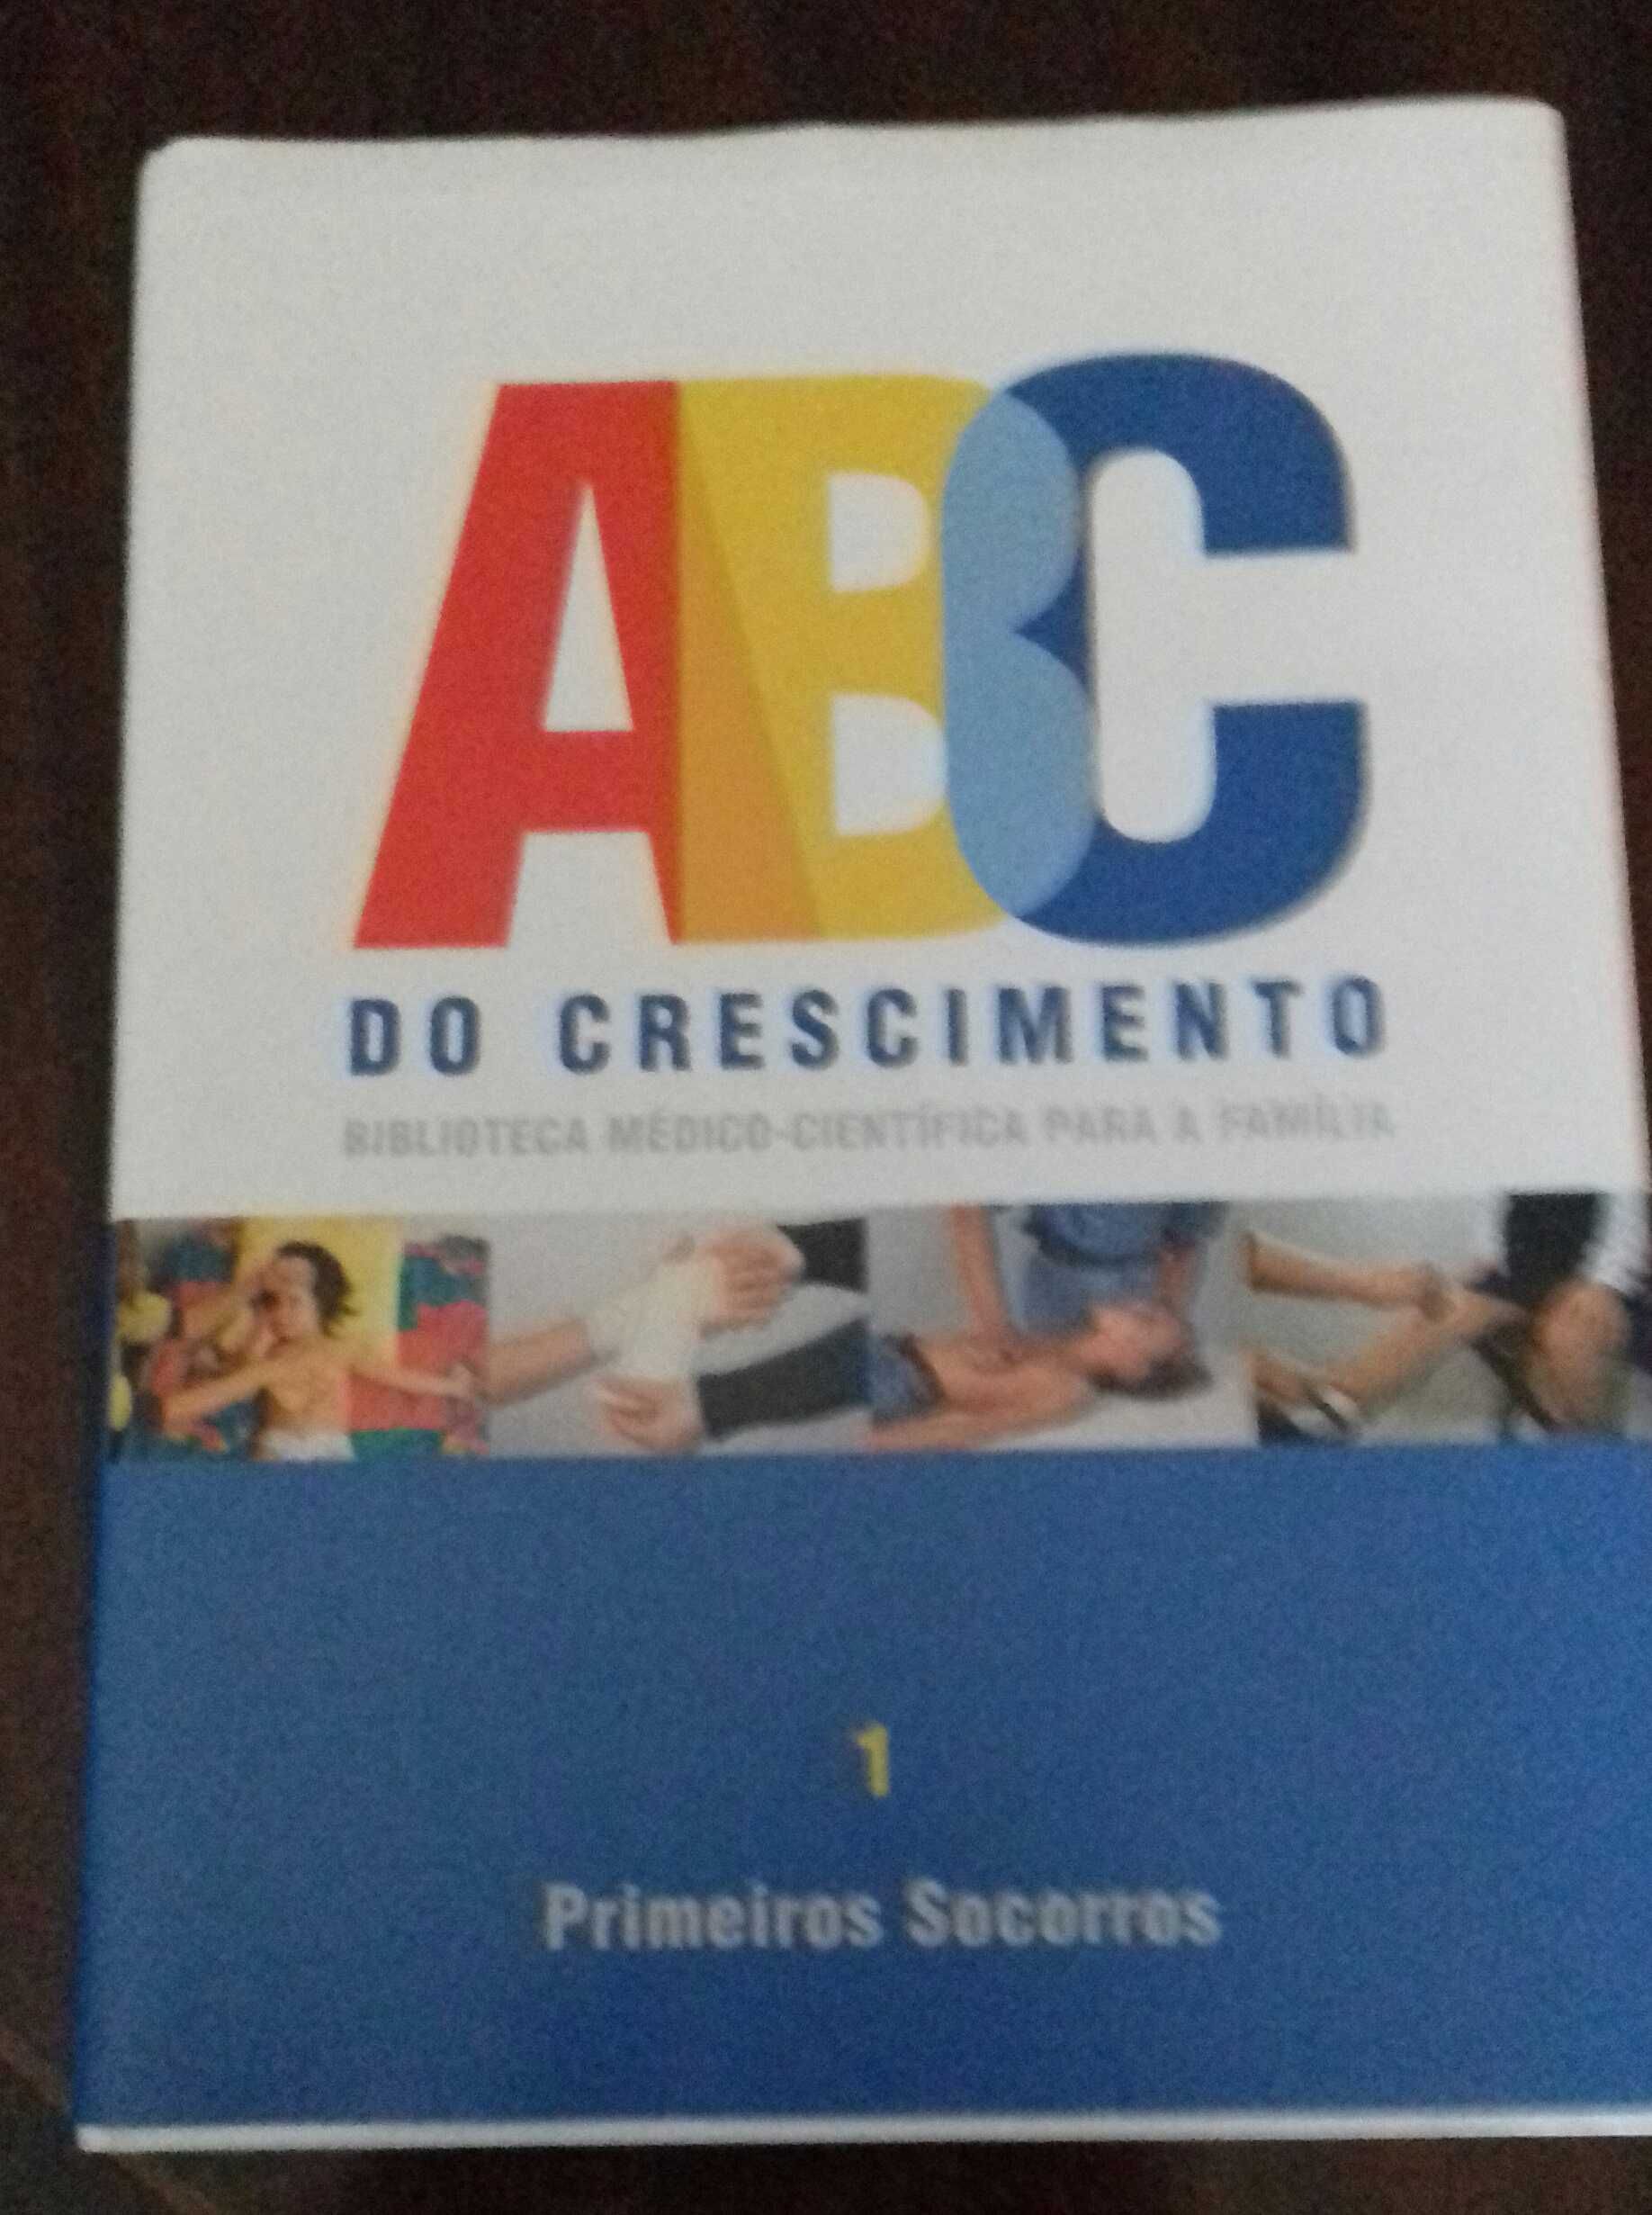 Livro ABC do crescimento - Primeiros Socorros